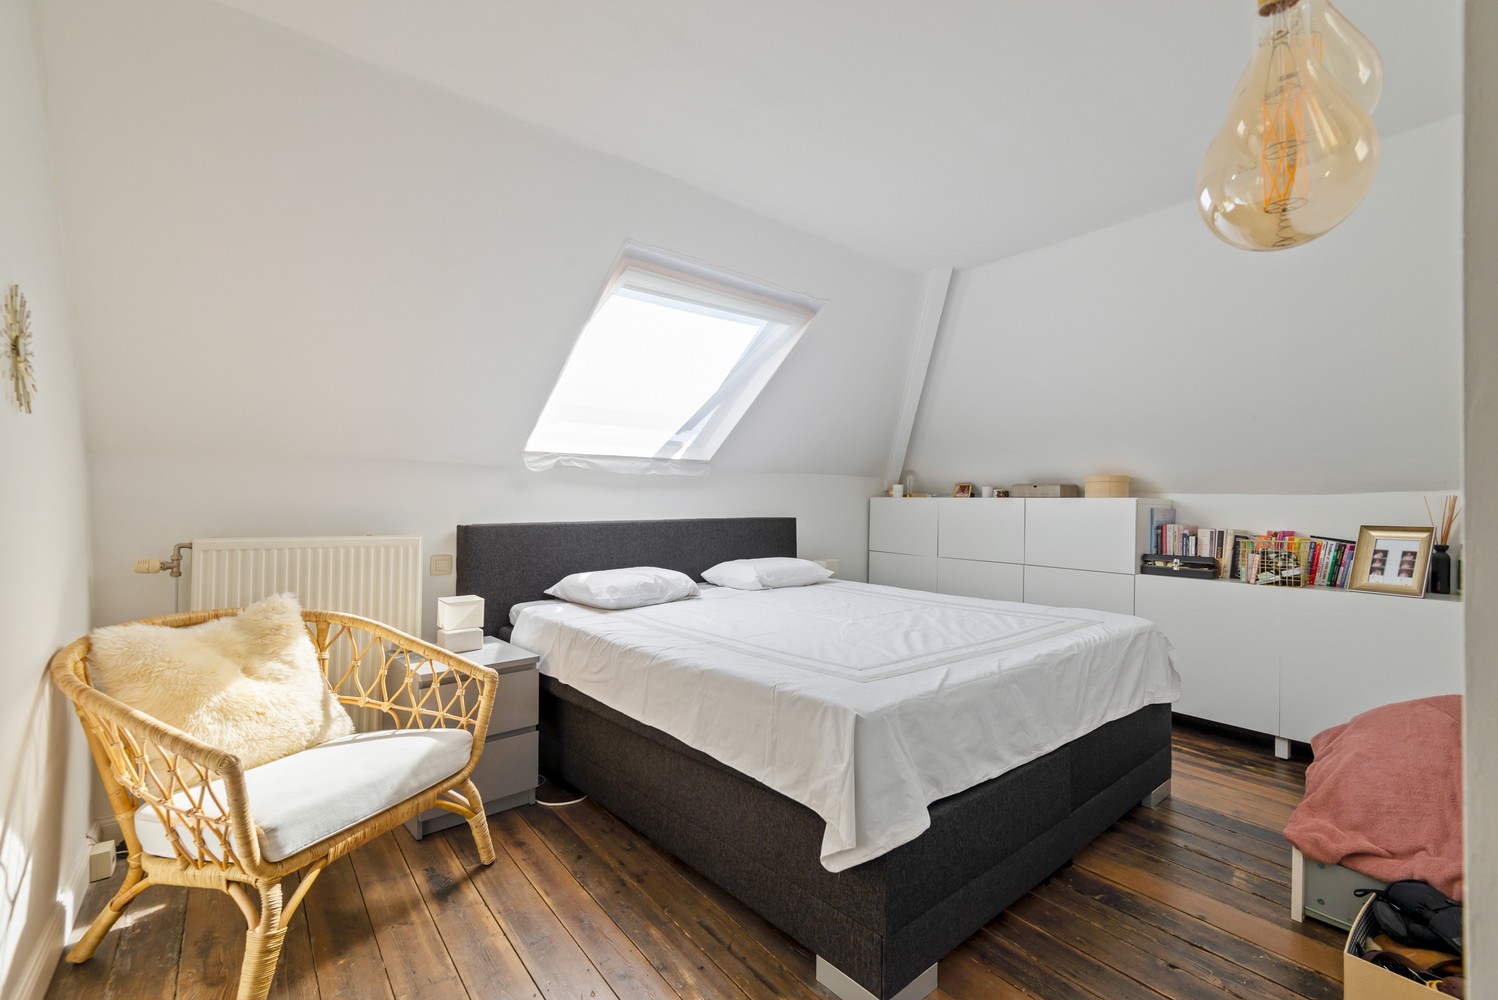 Handelshuis met drie slaapkamers te koop op toplocatie in Wijnegem! afbeelding 21